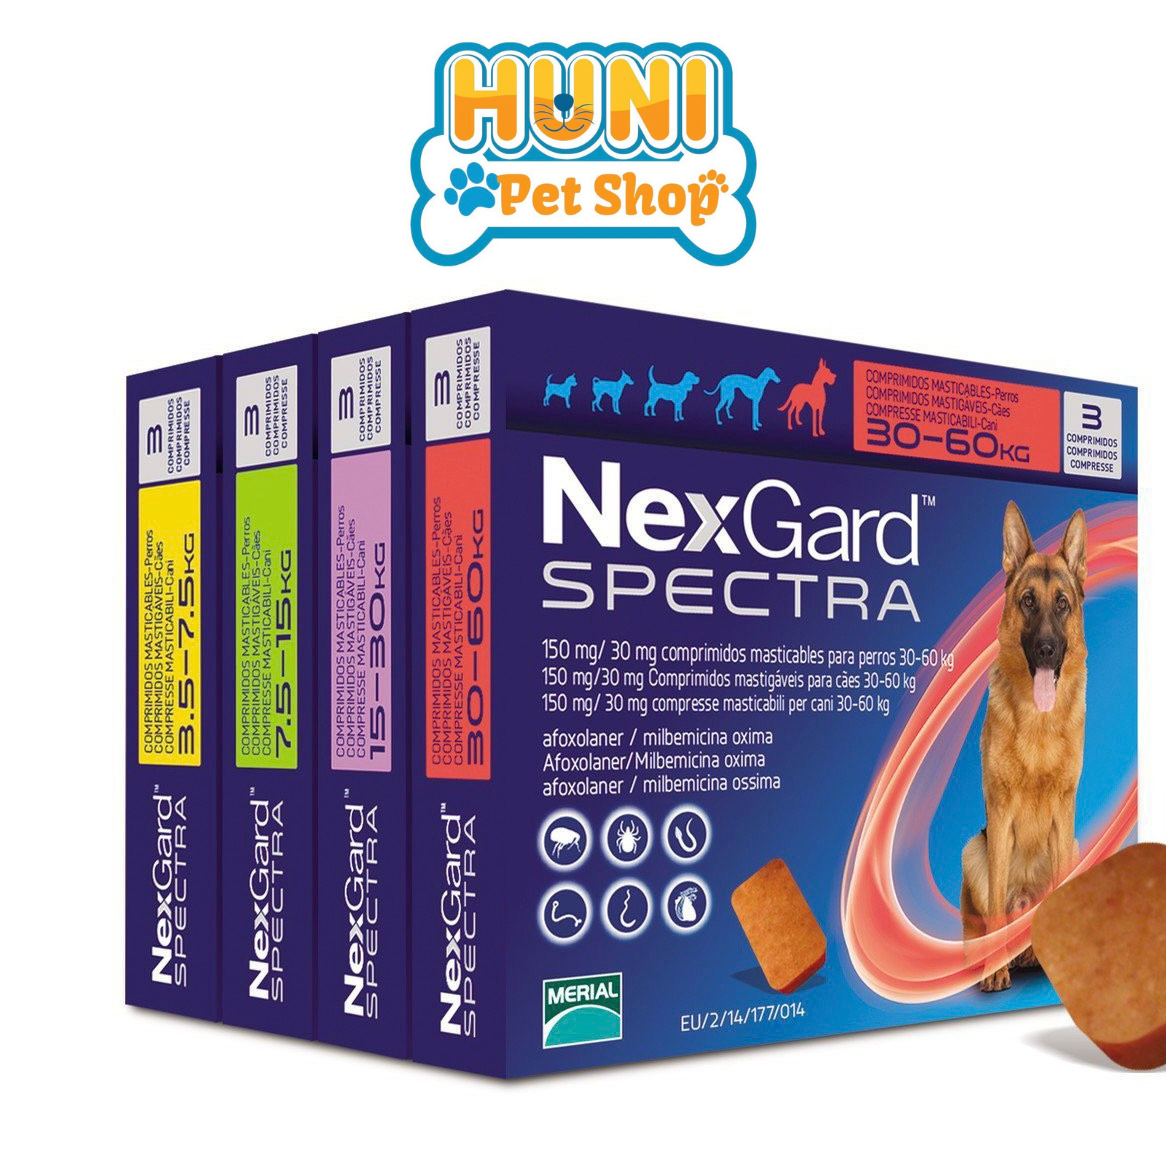 Nexgard Spectra viên nhai trị ve cho chó hiệu quả từ 1-3 tháng - Huni Petshop thumbnail